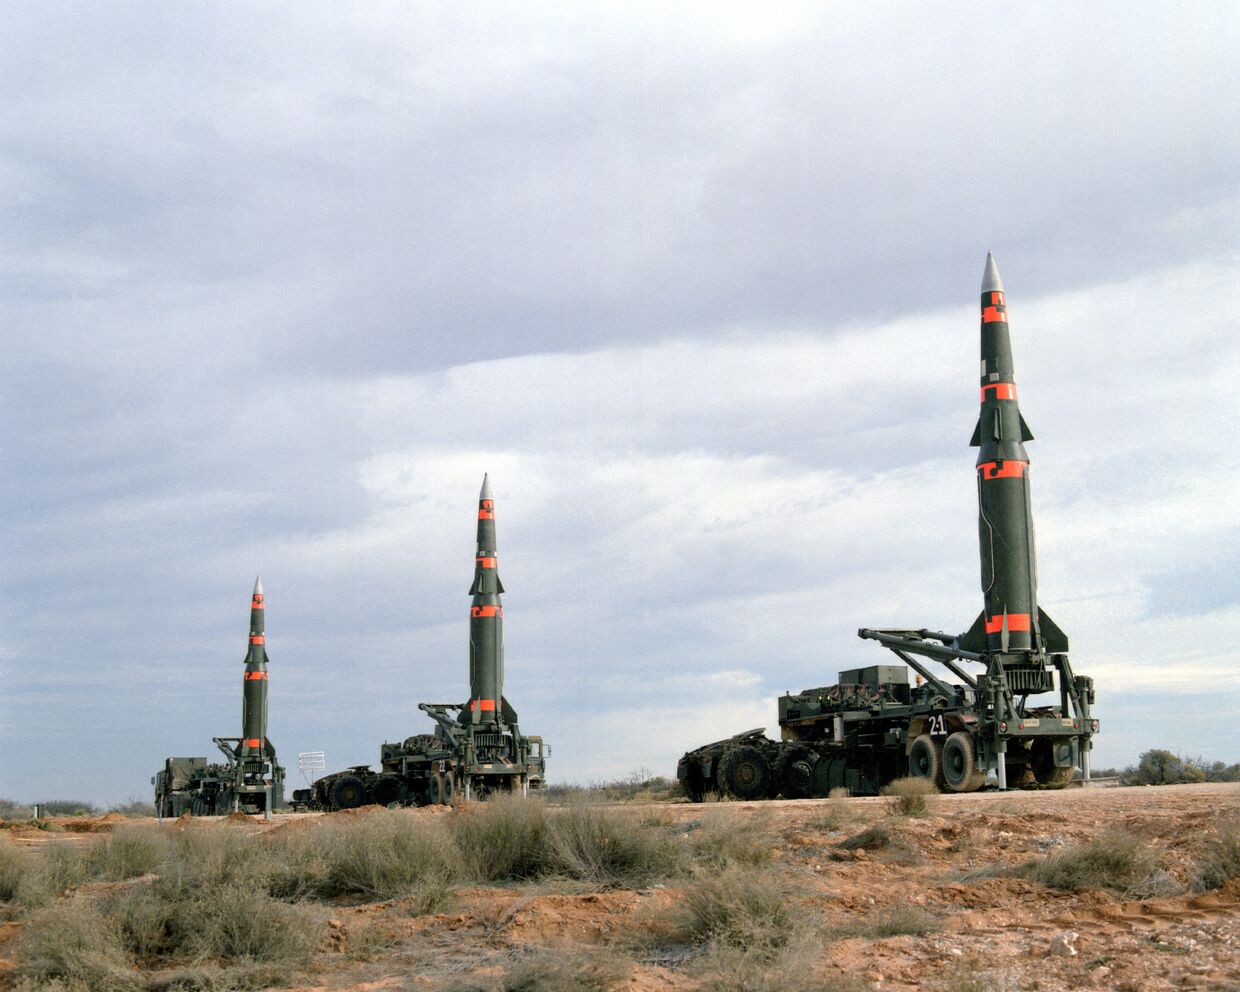 Баллистические ракеты средней дальности Pershing II